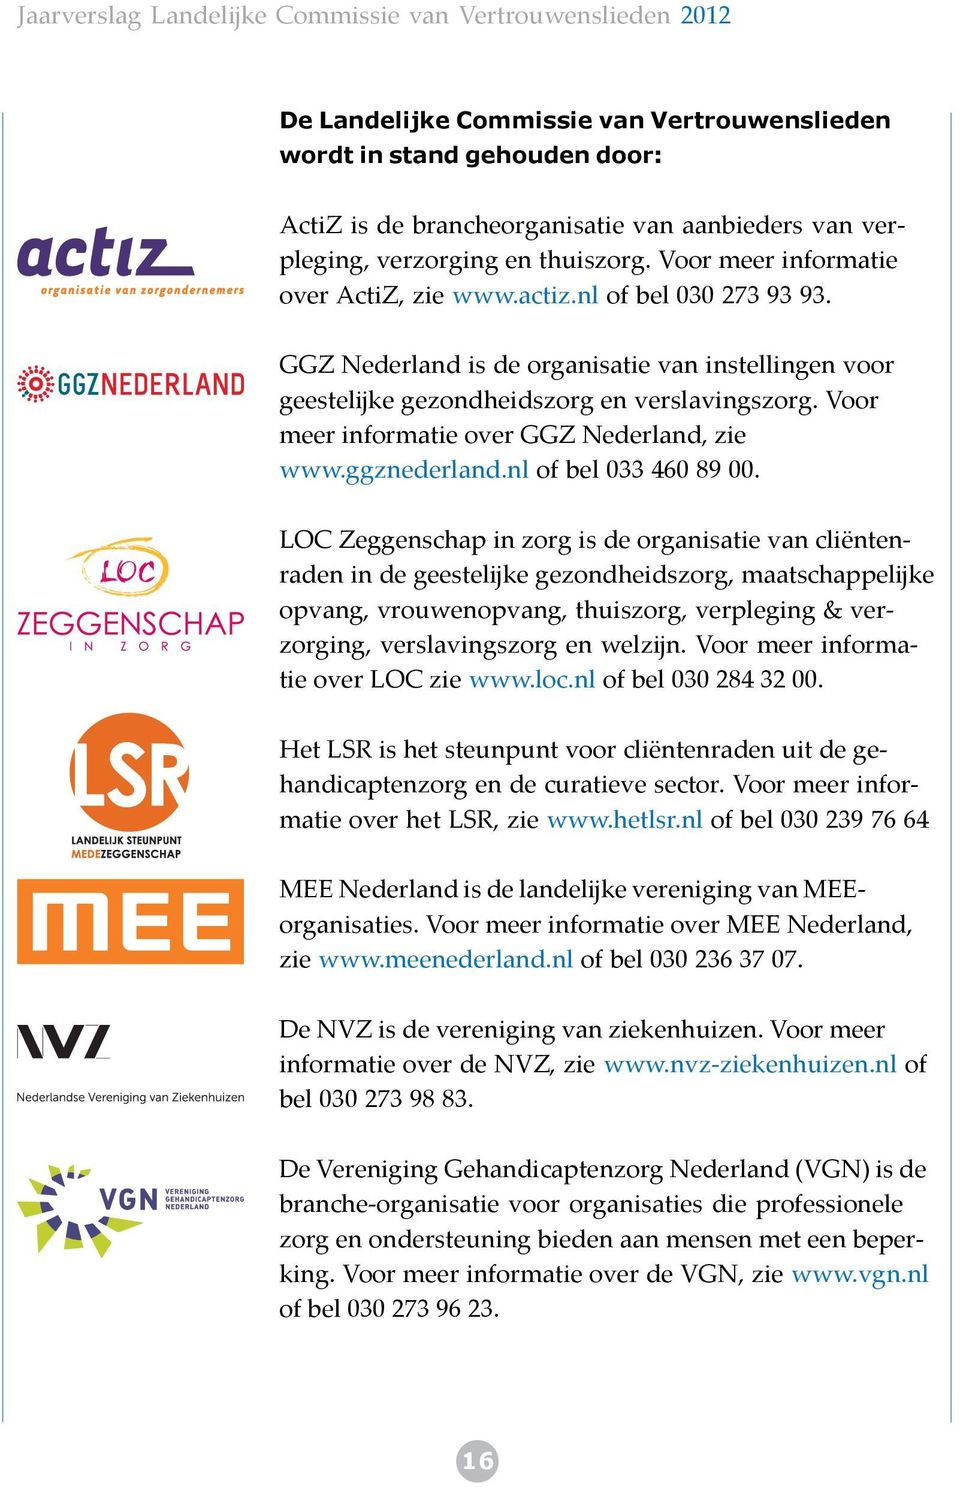 Voor meer informatie over GGZ Nederland, zie www.ggznederland.nl of bel 033 460 89 00.